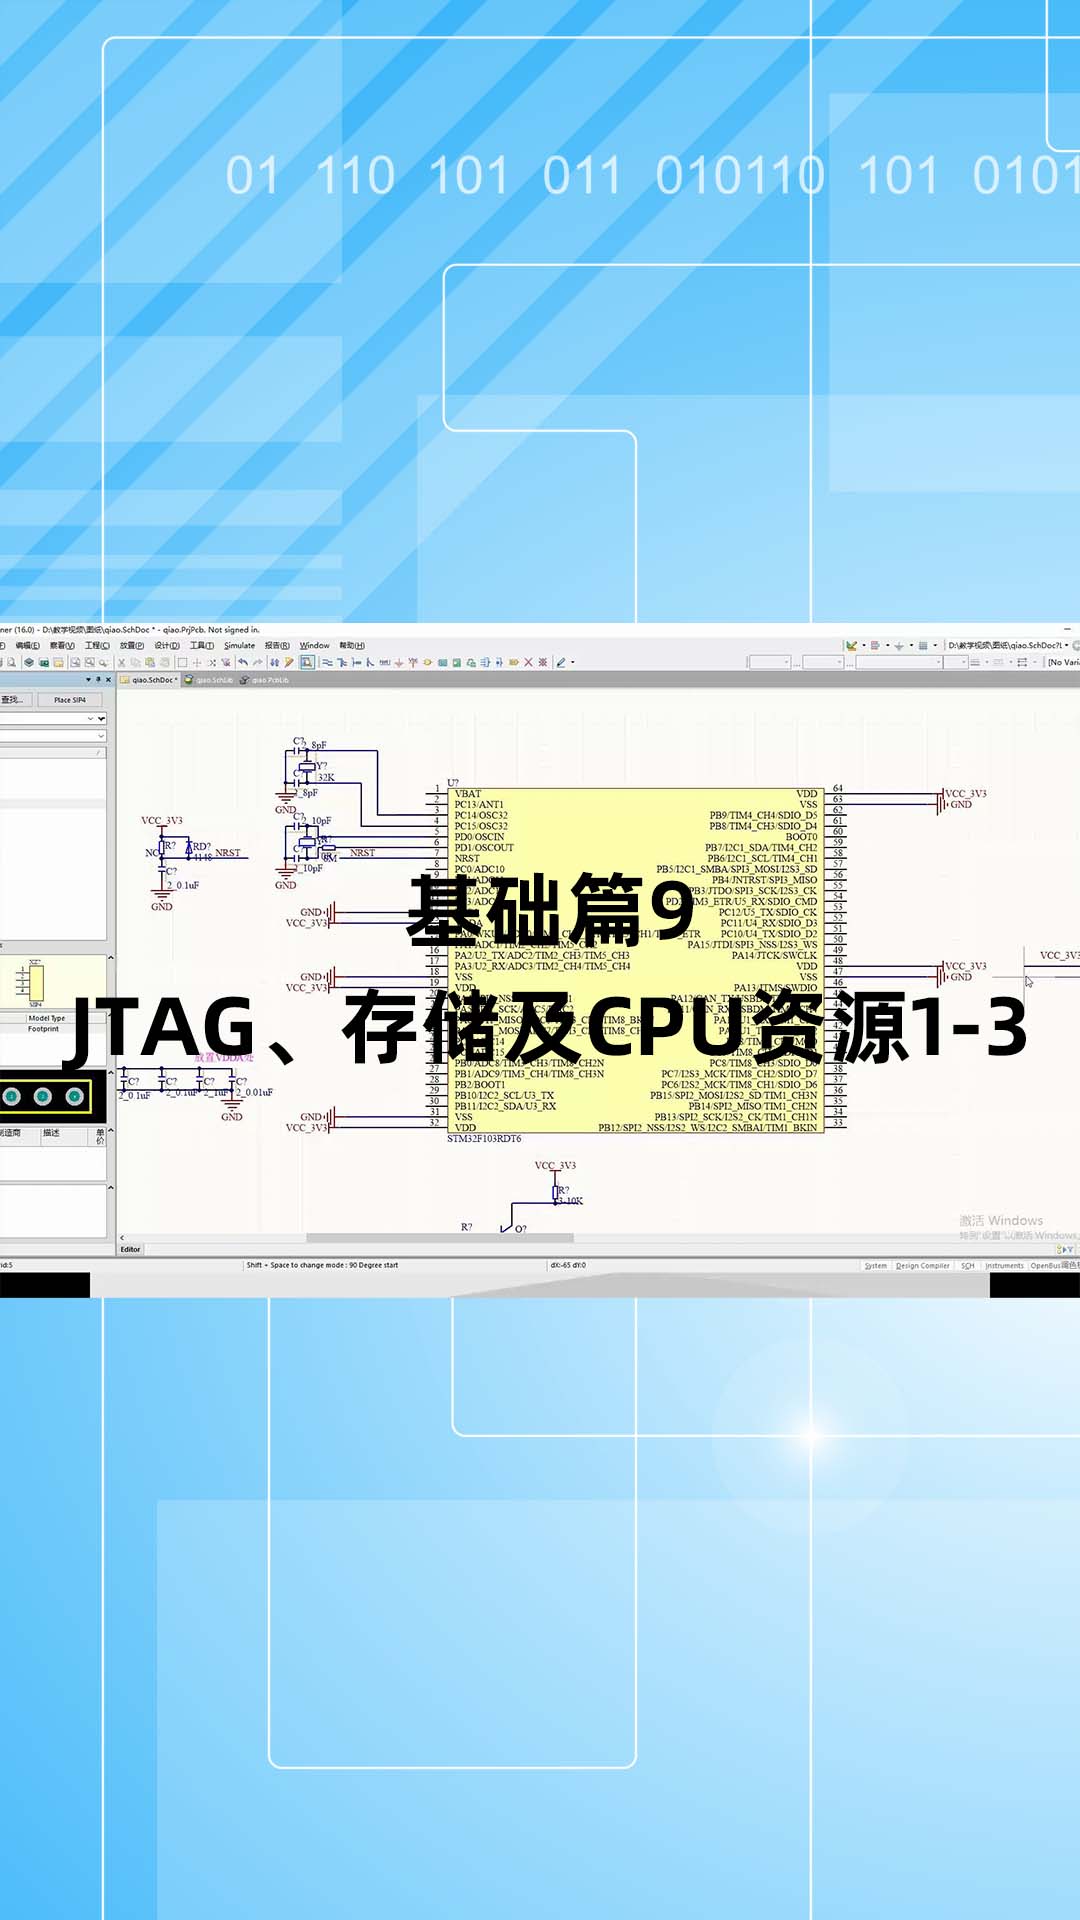 基础篇9 - 1.9_JTAG、存储及CPU资源1